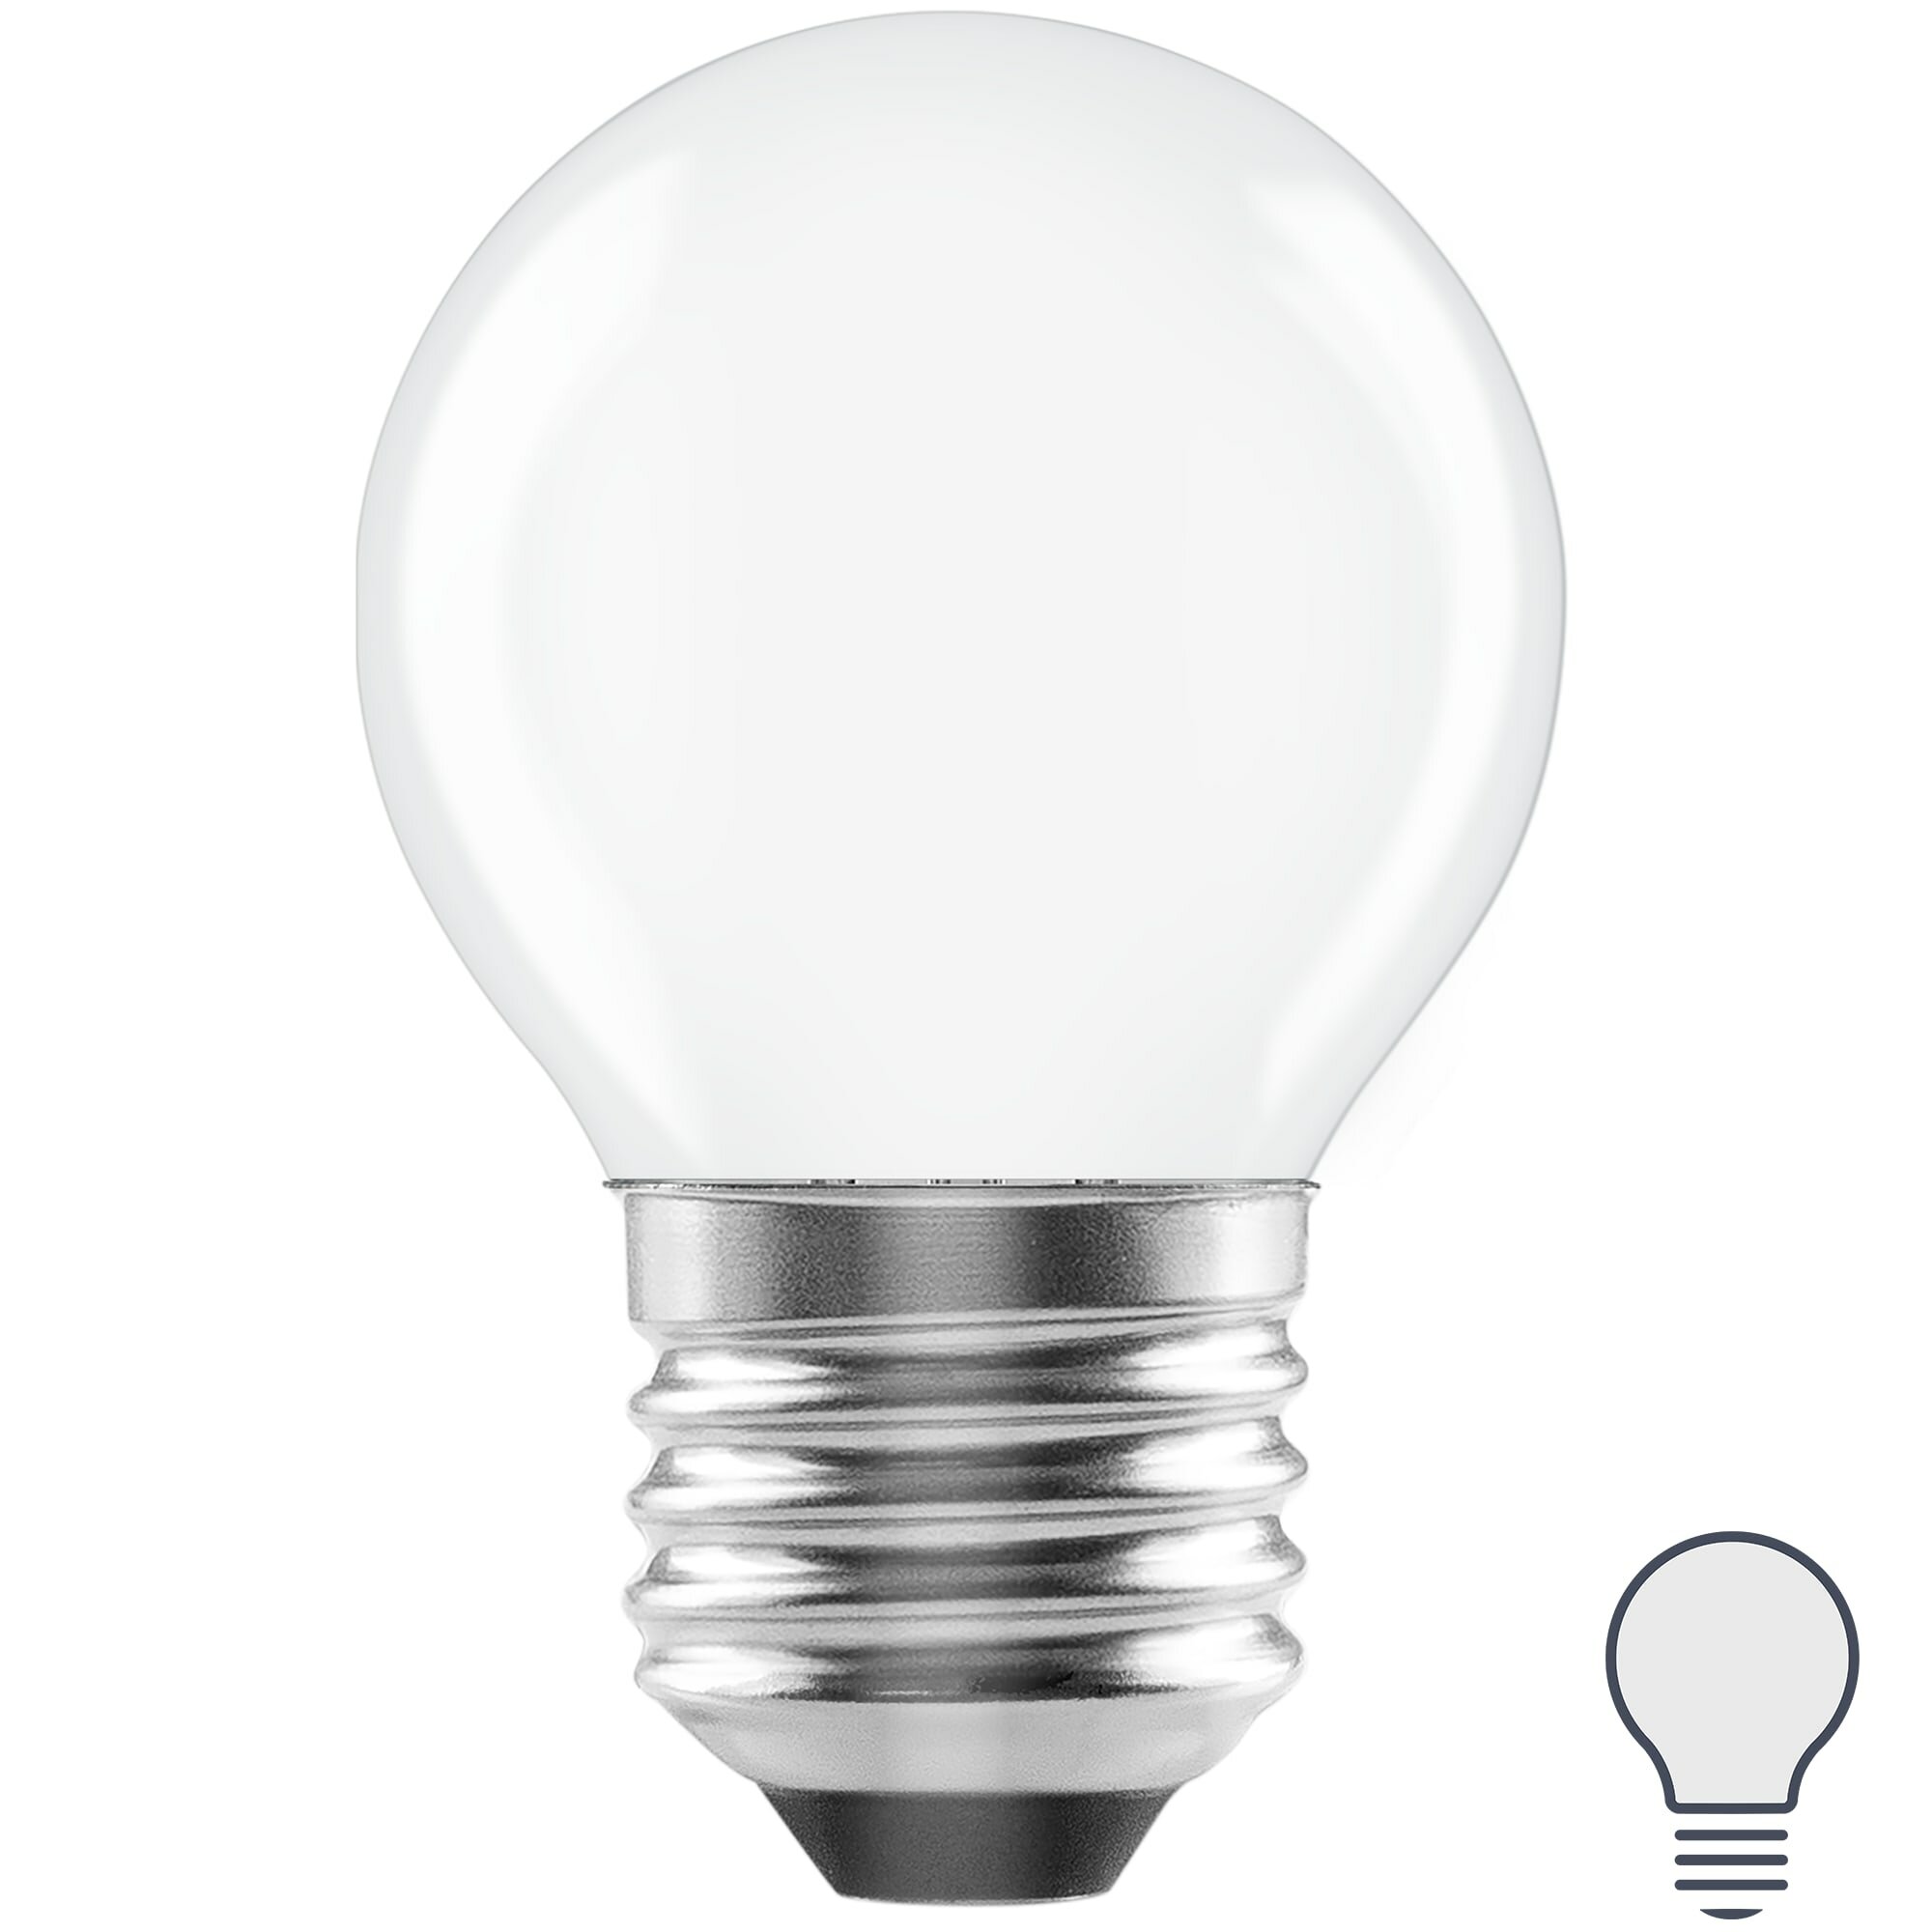 Лампа светодиодная Lexman E27 220-240 В 6 Вт шар матовая 750 лм нейтральный белый свет. Набор из 2 шт.